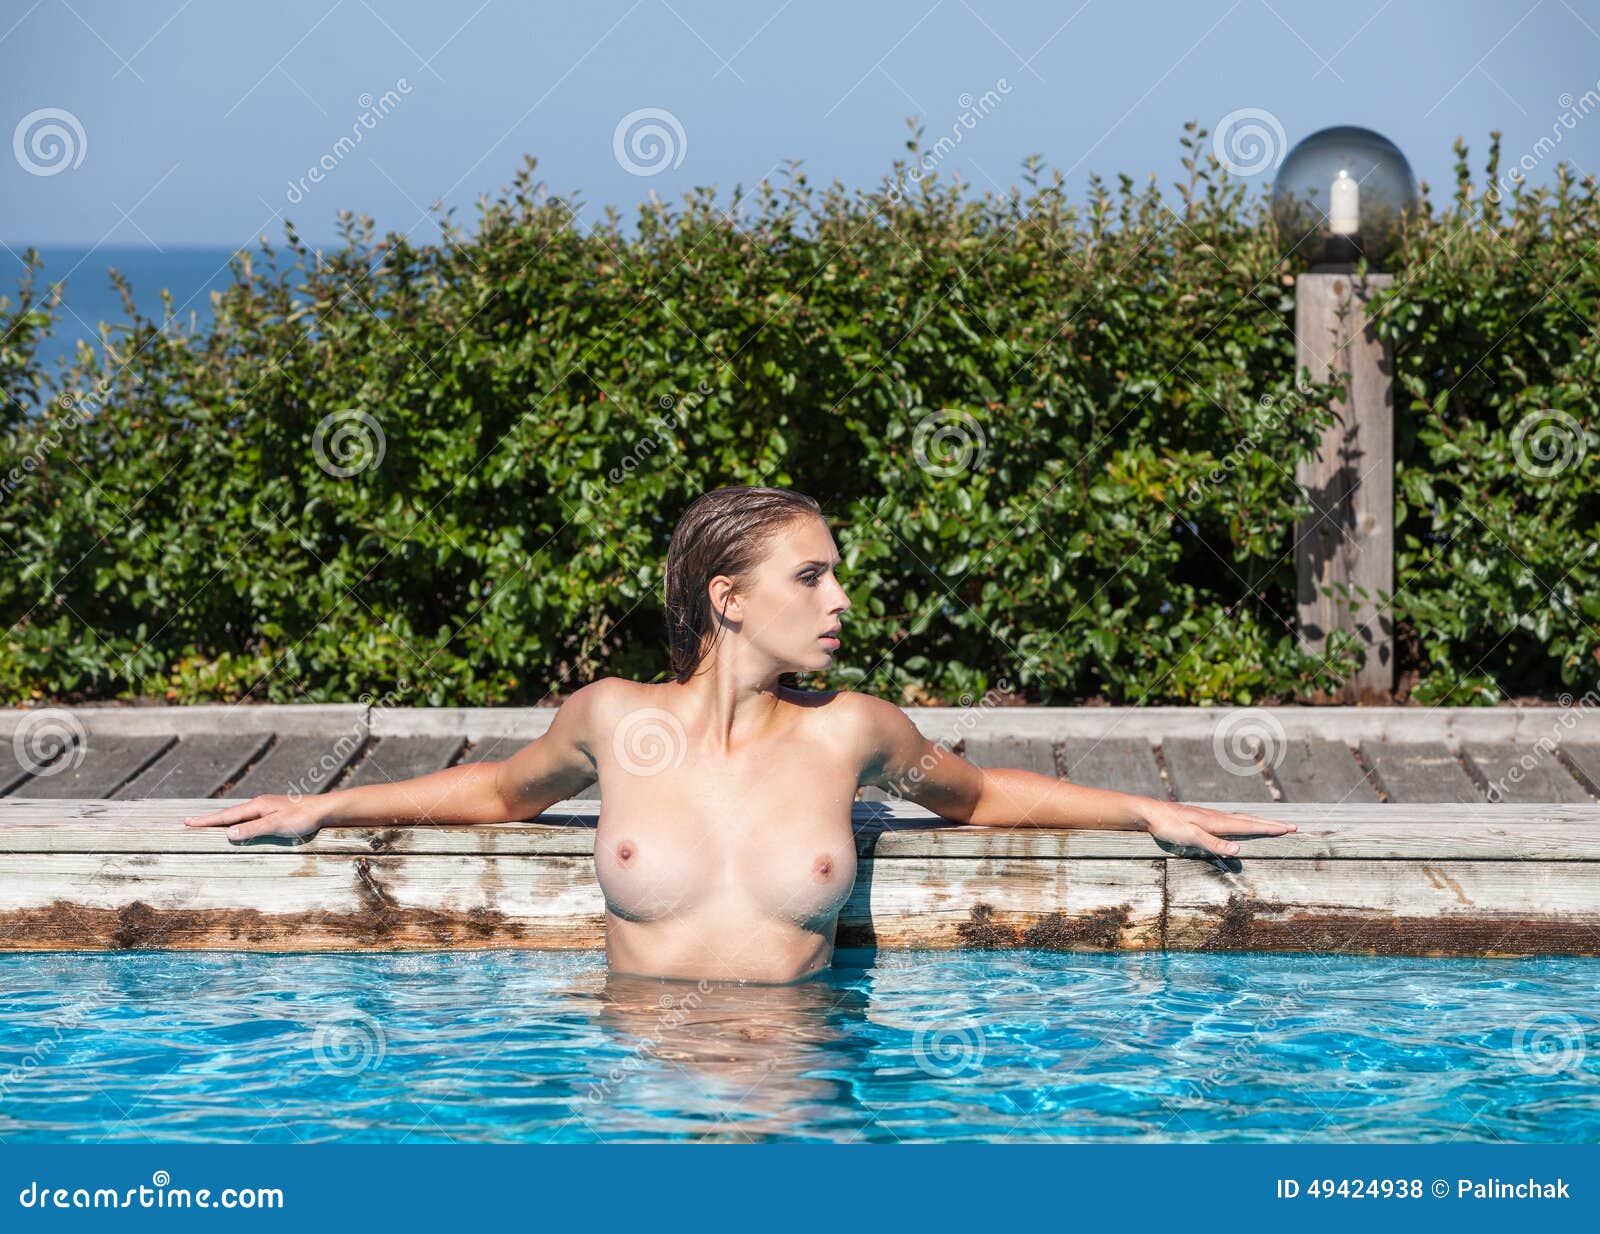 Desnudo en piscina